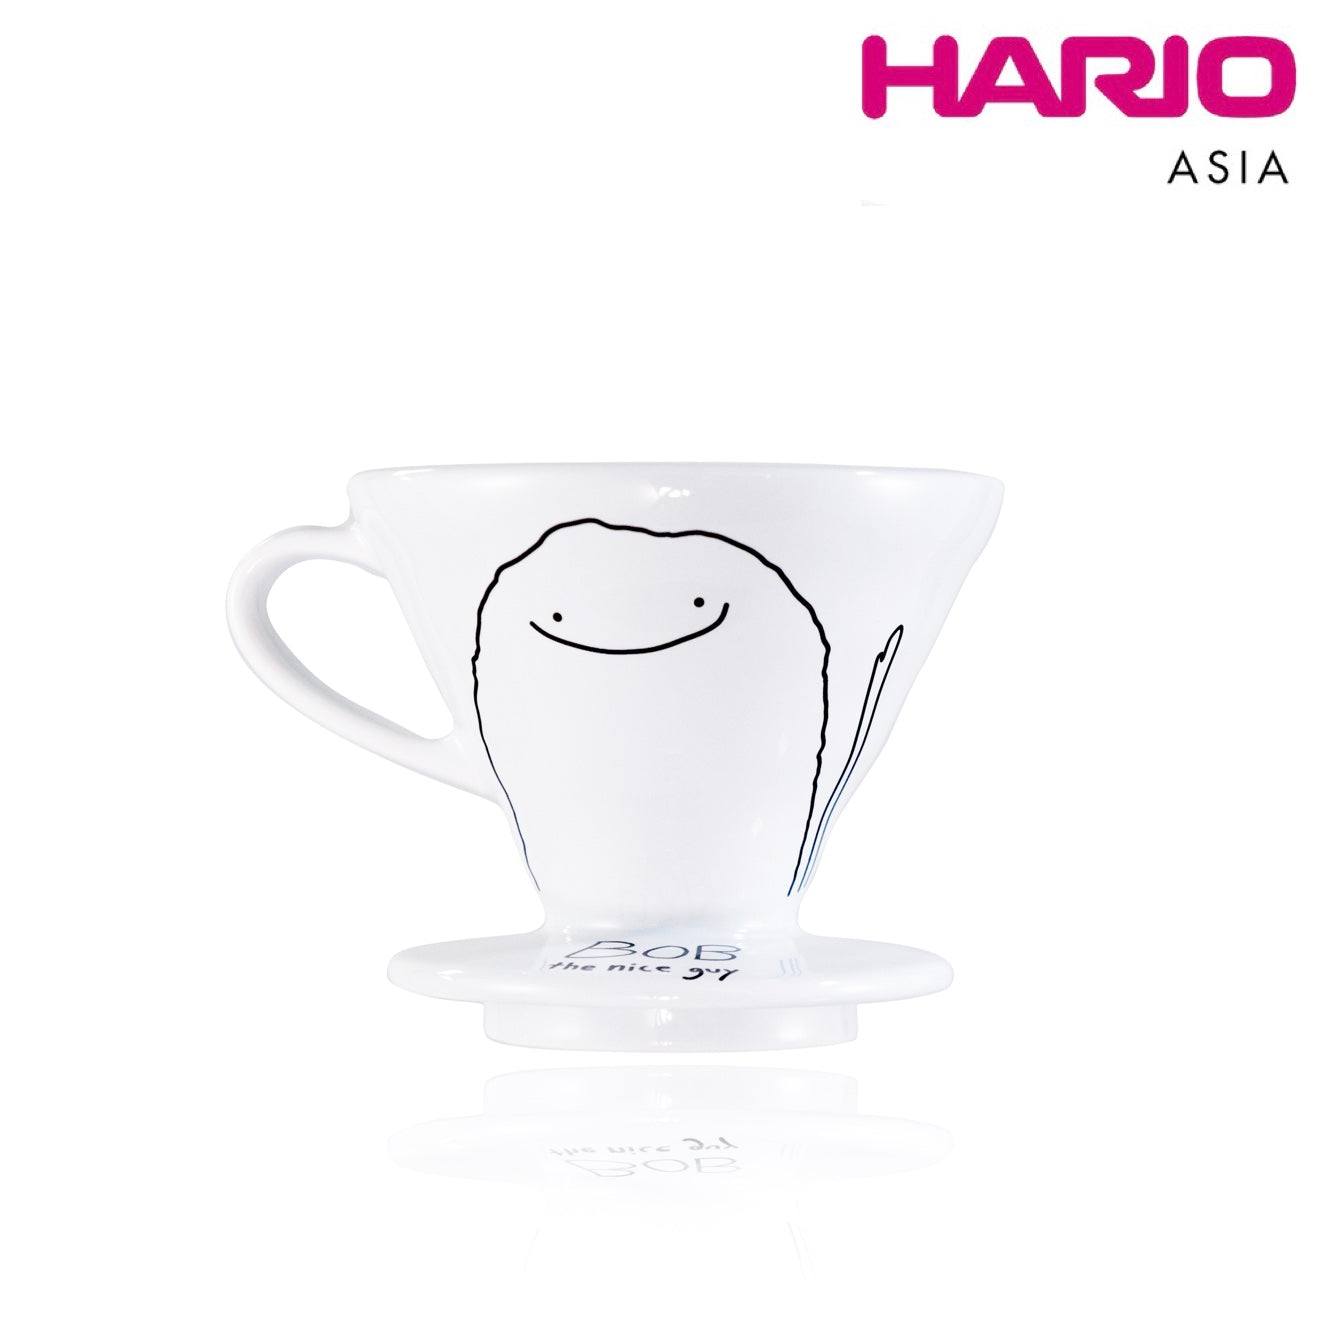 Hario Bob V60 Dripper Size 02